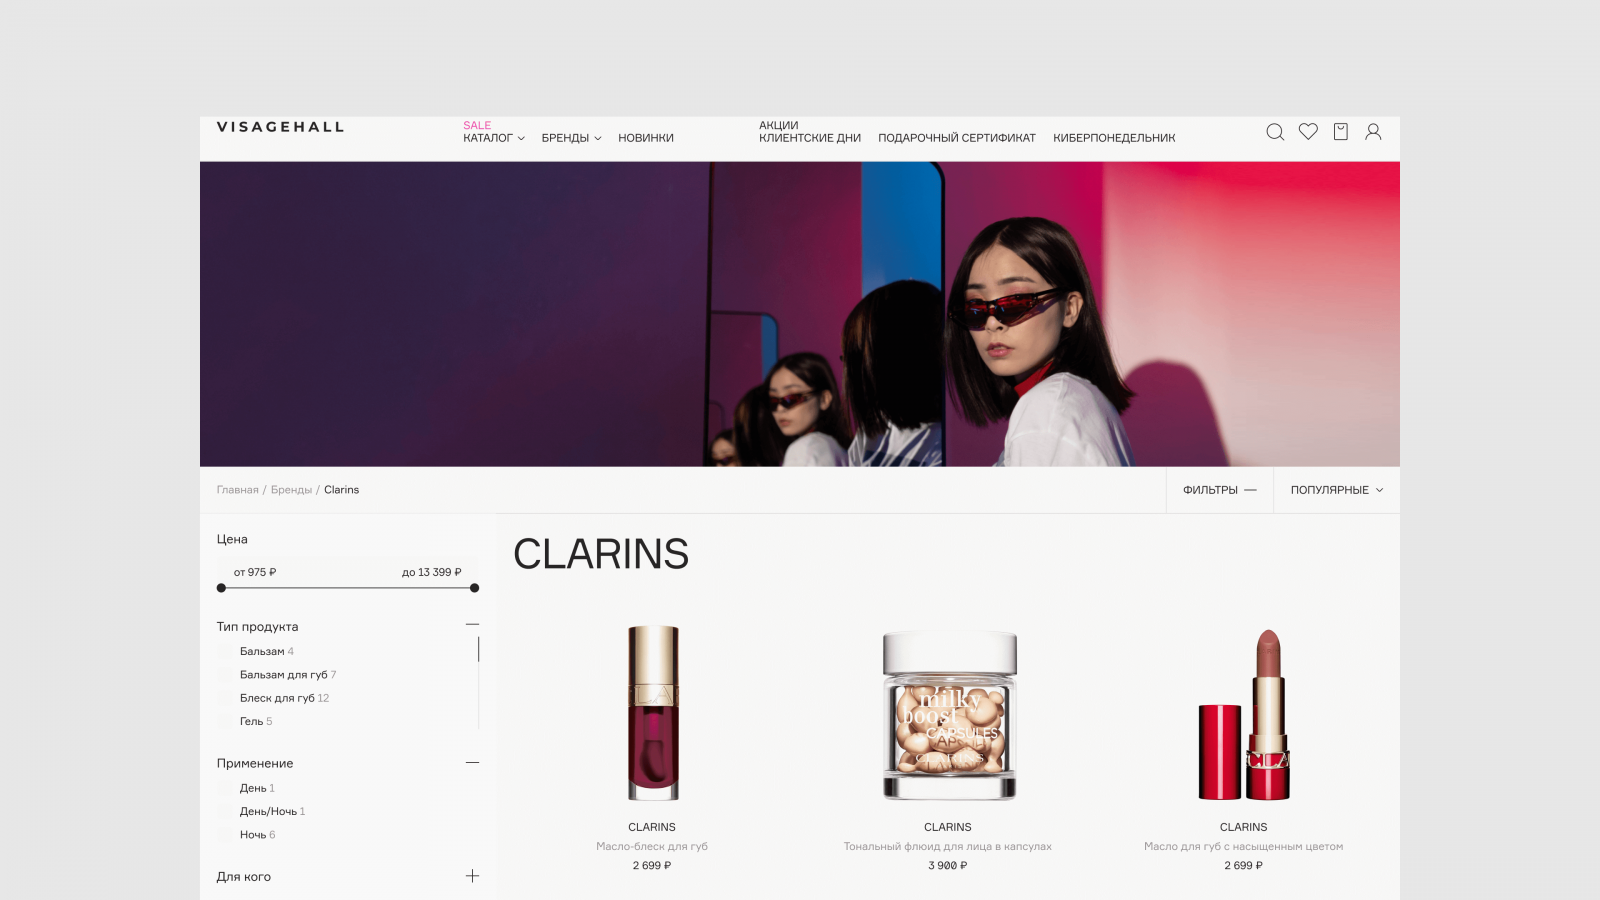 Компания ONY осуществила переосмысление дизайна веб-сайта популярного бренда парфюмерии и косметики VisageHall